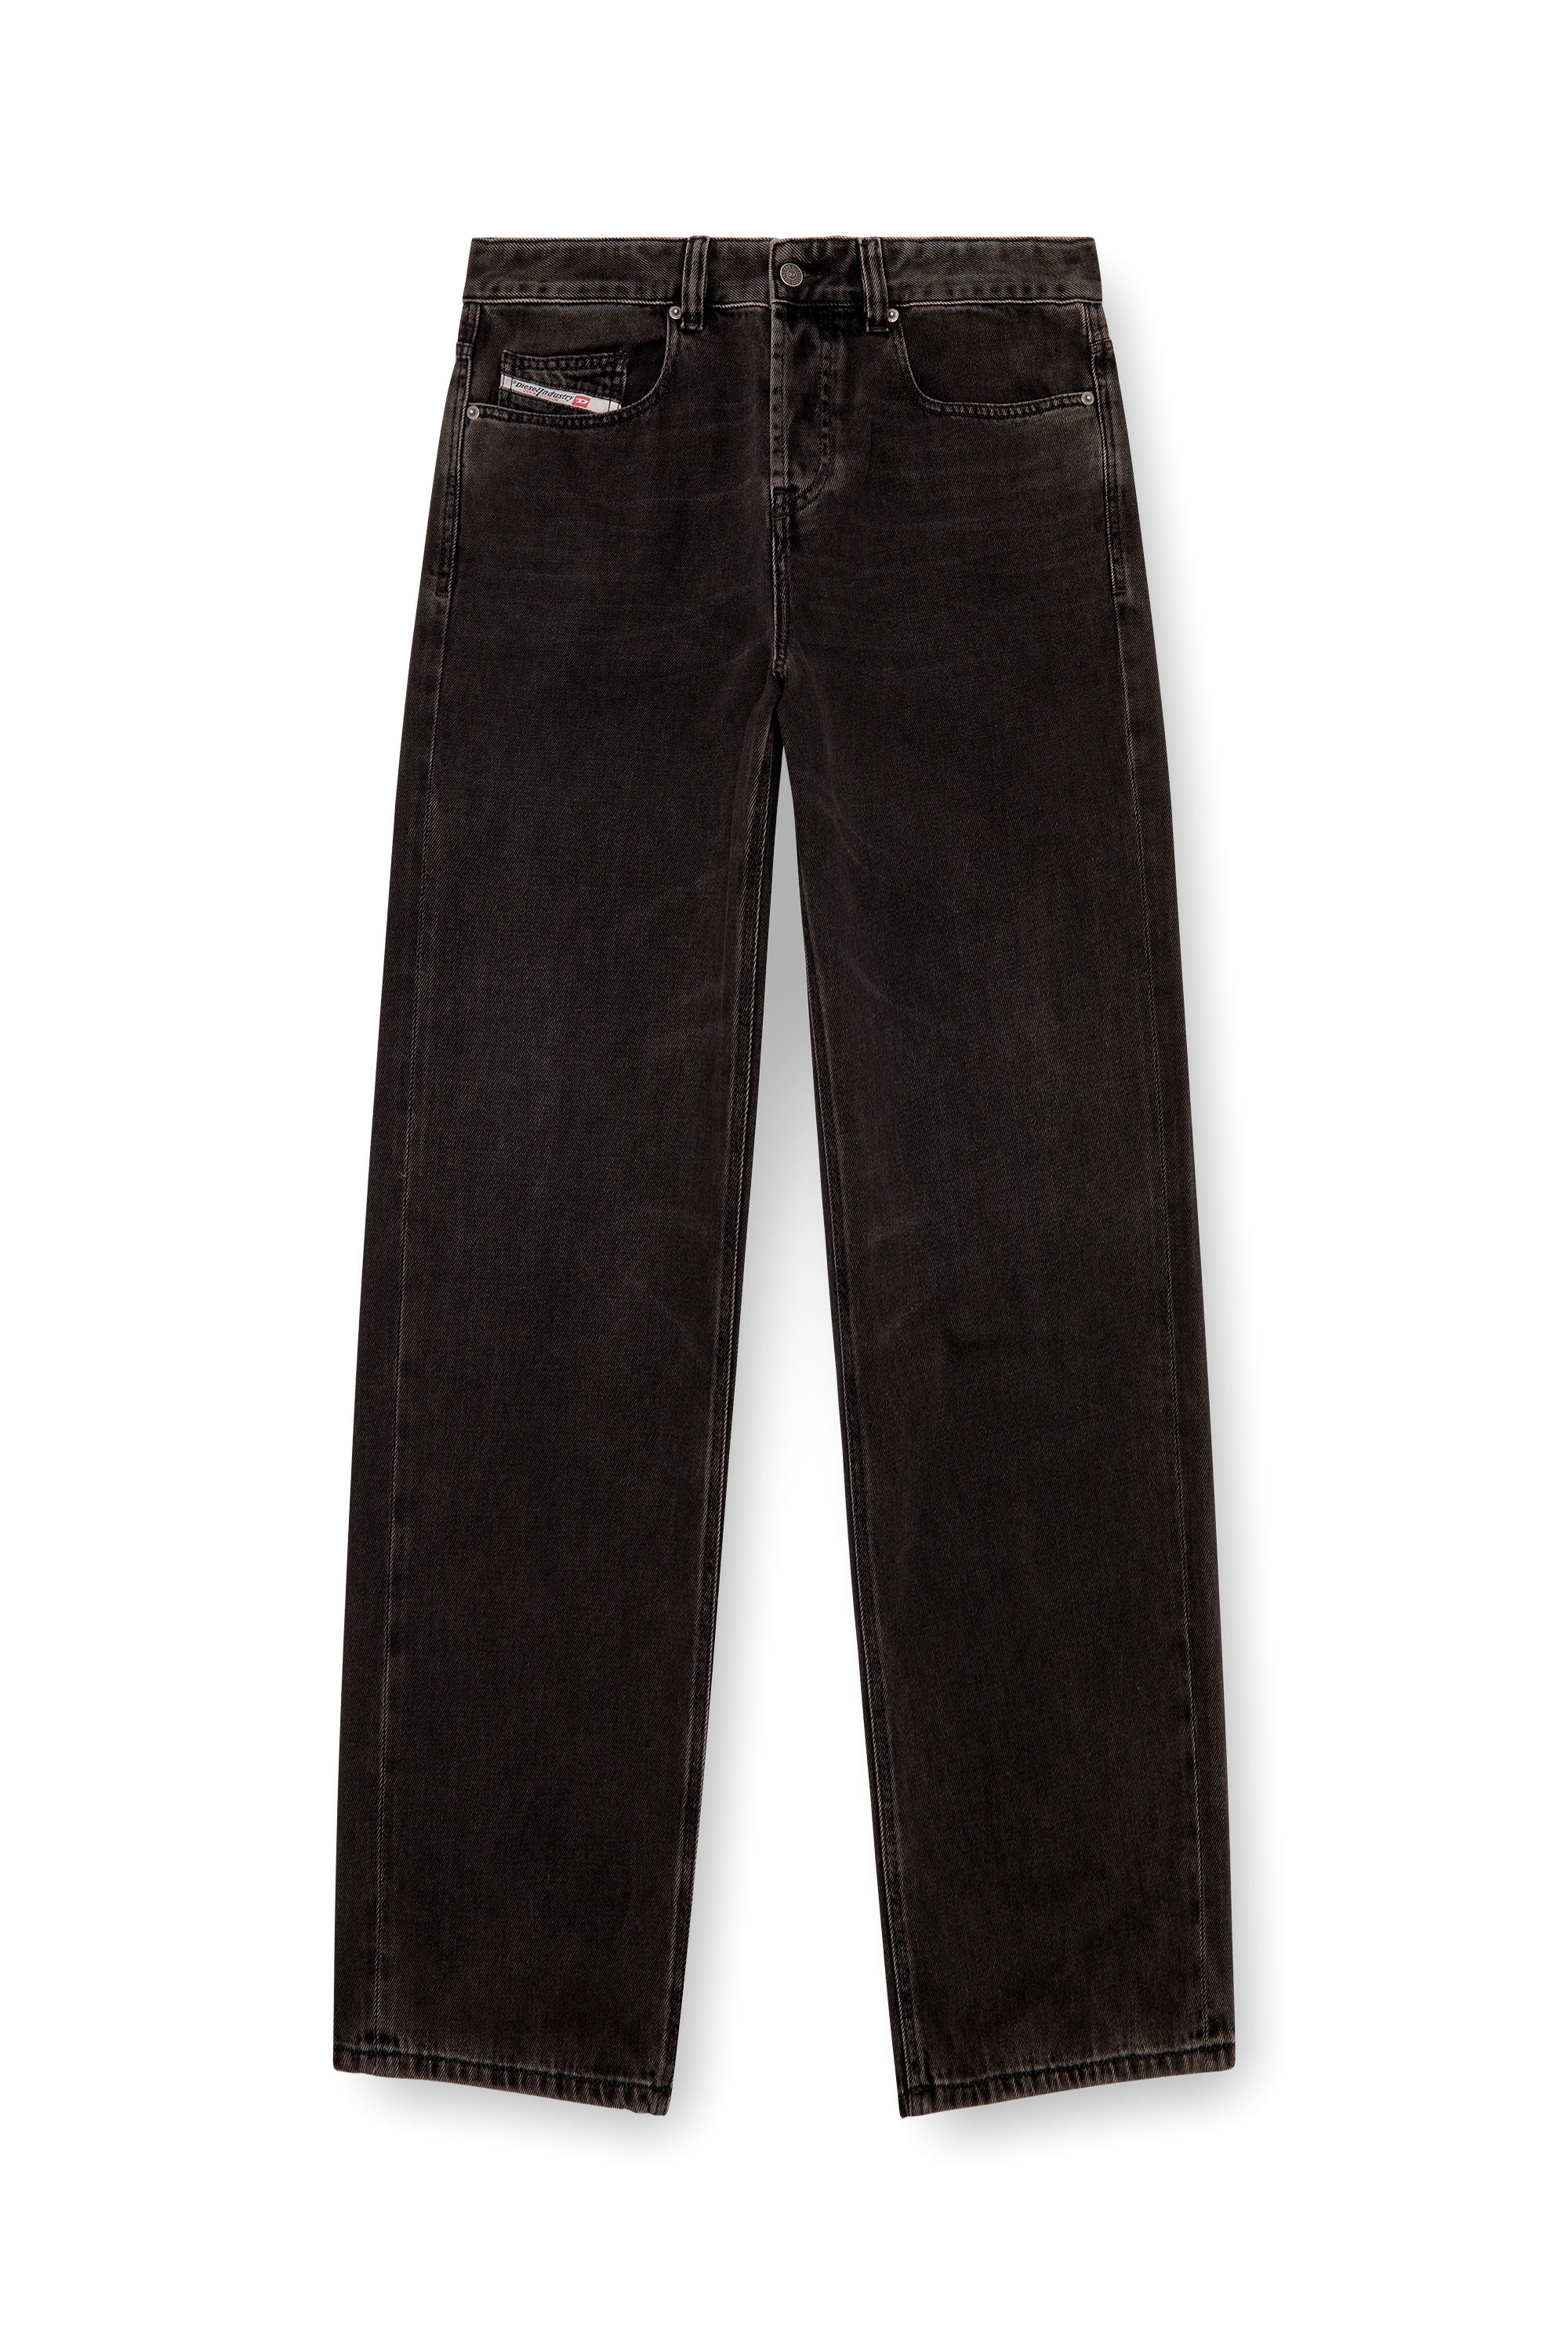 Diesel - Man Straight Jeans 2001 D-Macro 09I35, Black/Dark grey - Image 3